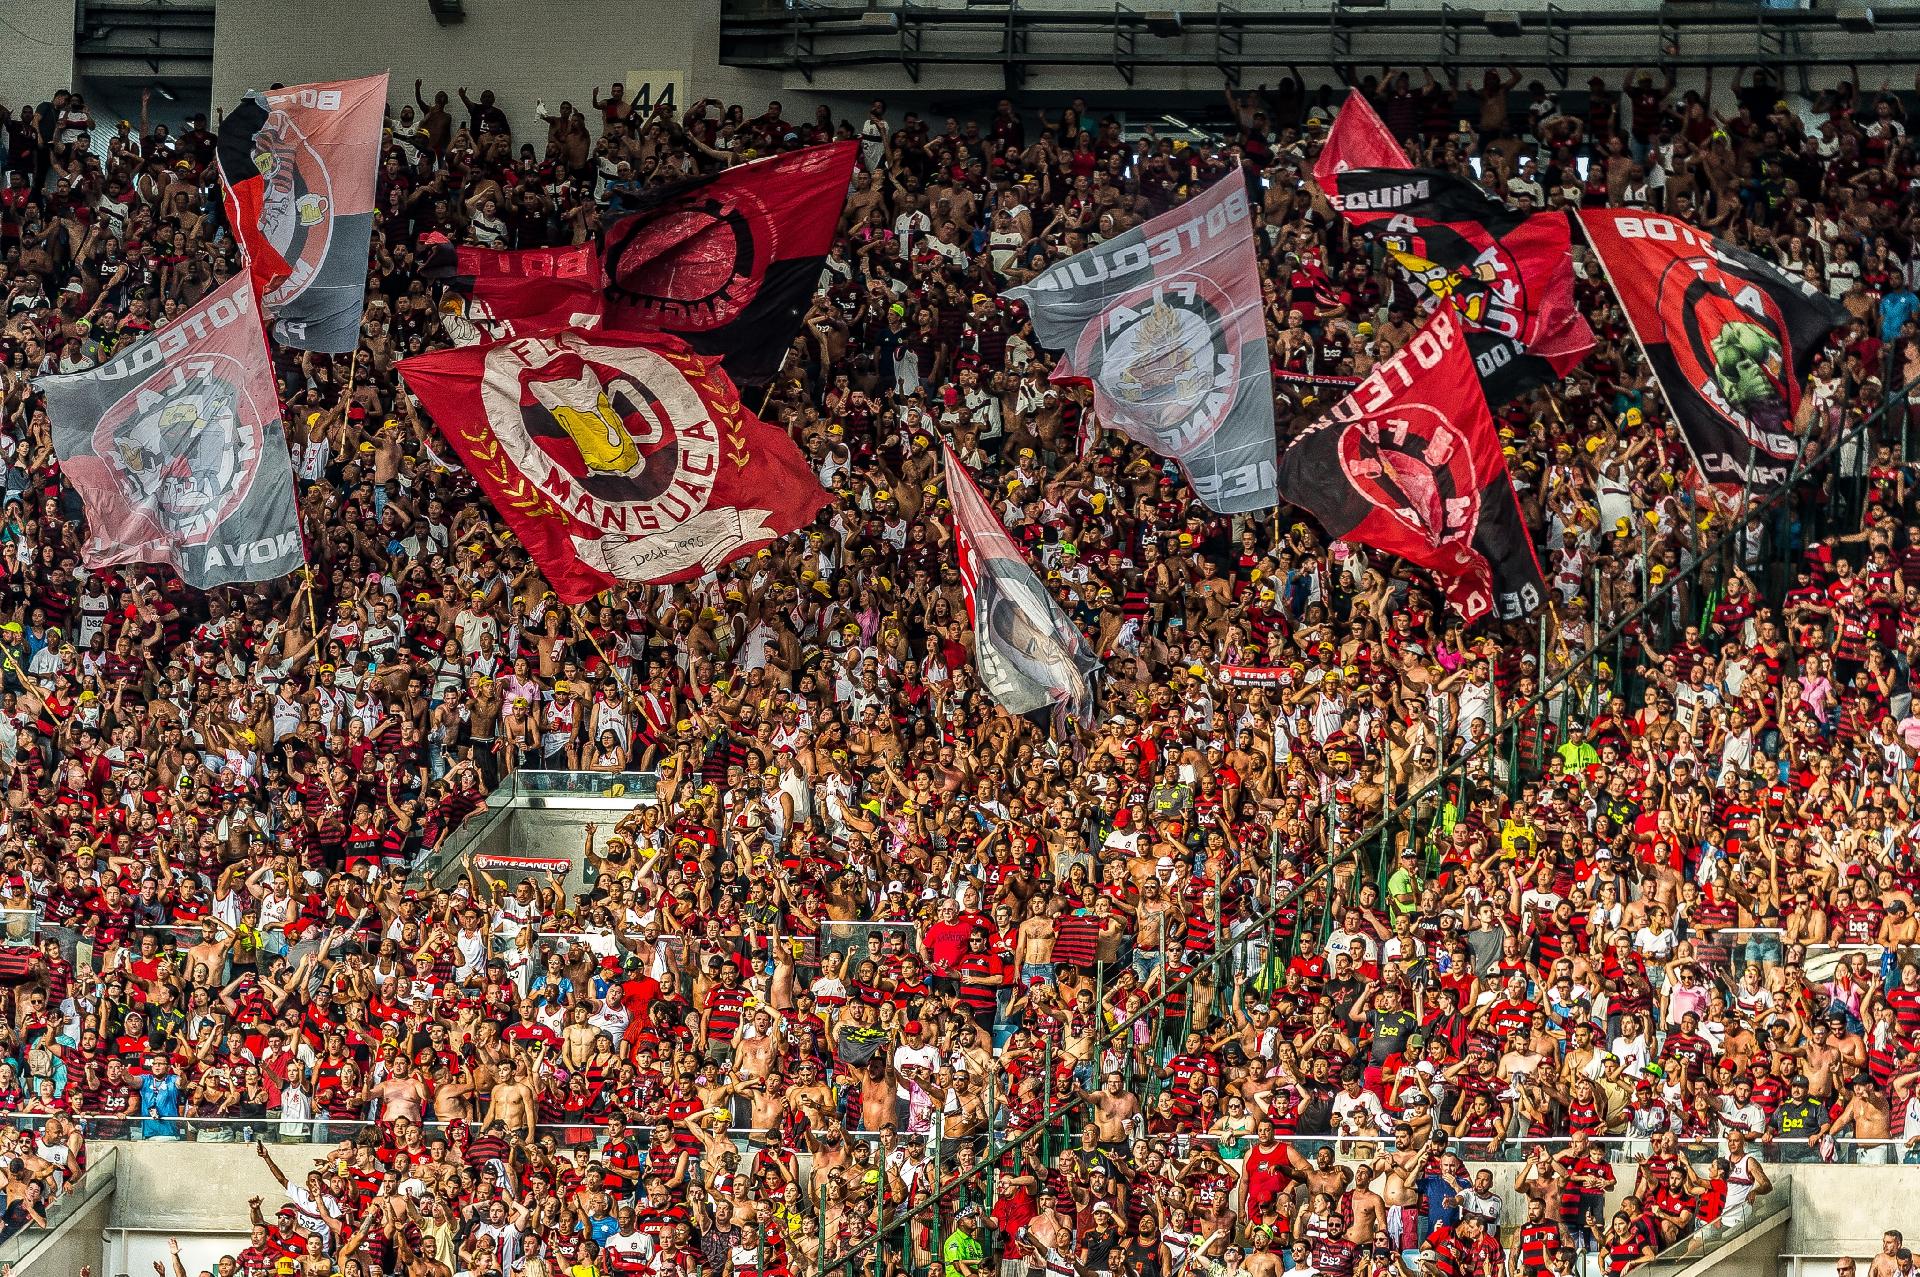 1º lugar - Flamengo: 21,9% - 46,9 milhões de torcedores